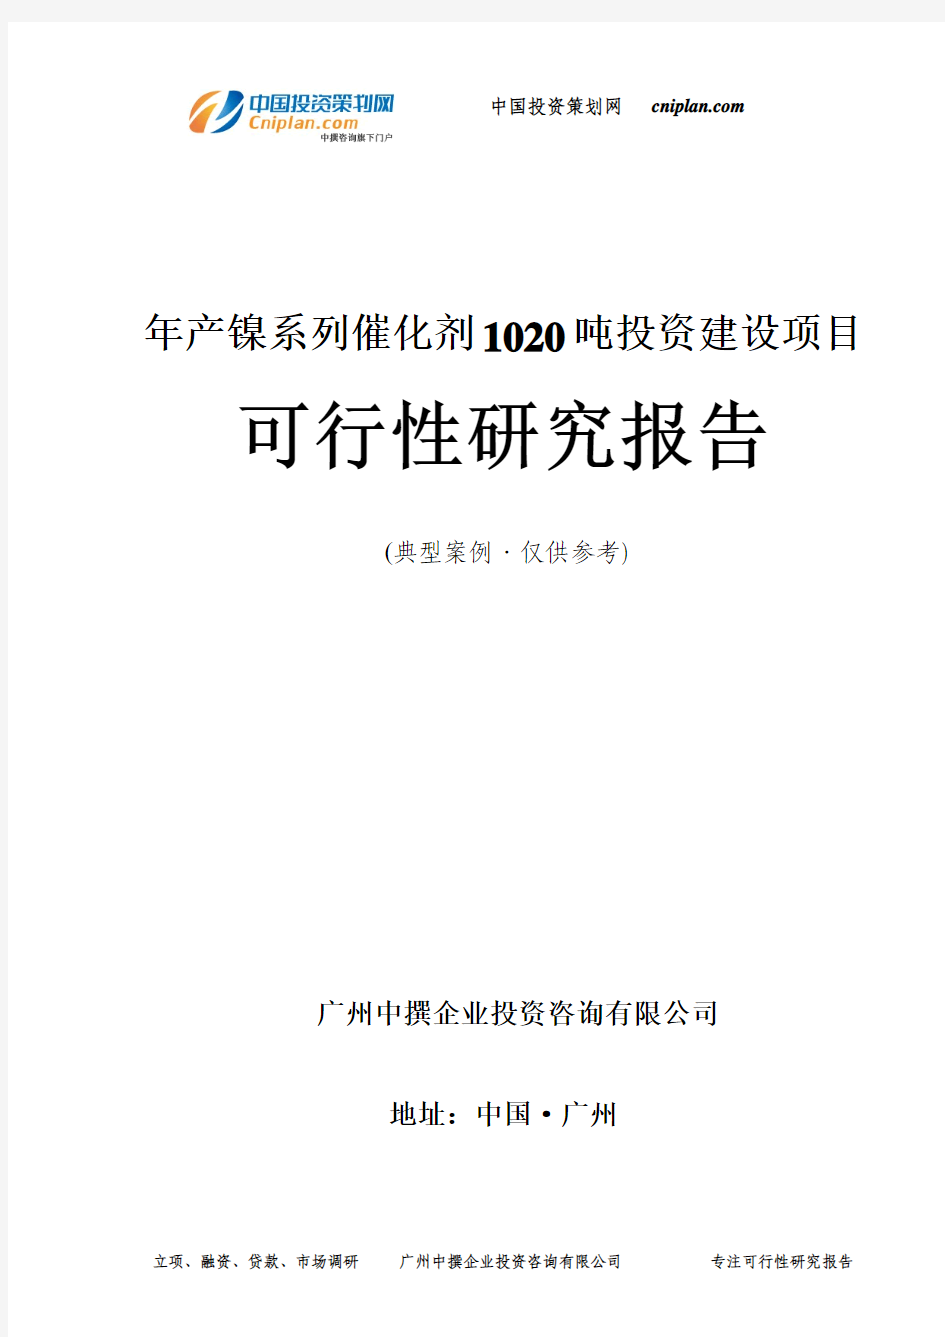 年产镍系列催化剂1020吨投资建设项目可行性研究报告-广州中撰咨询